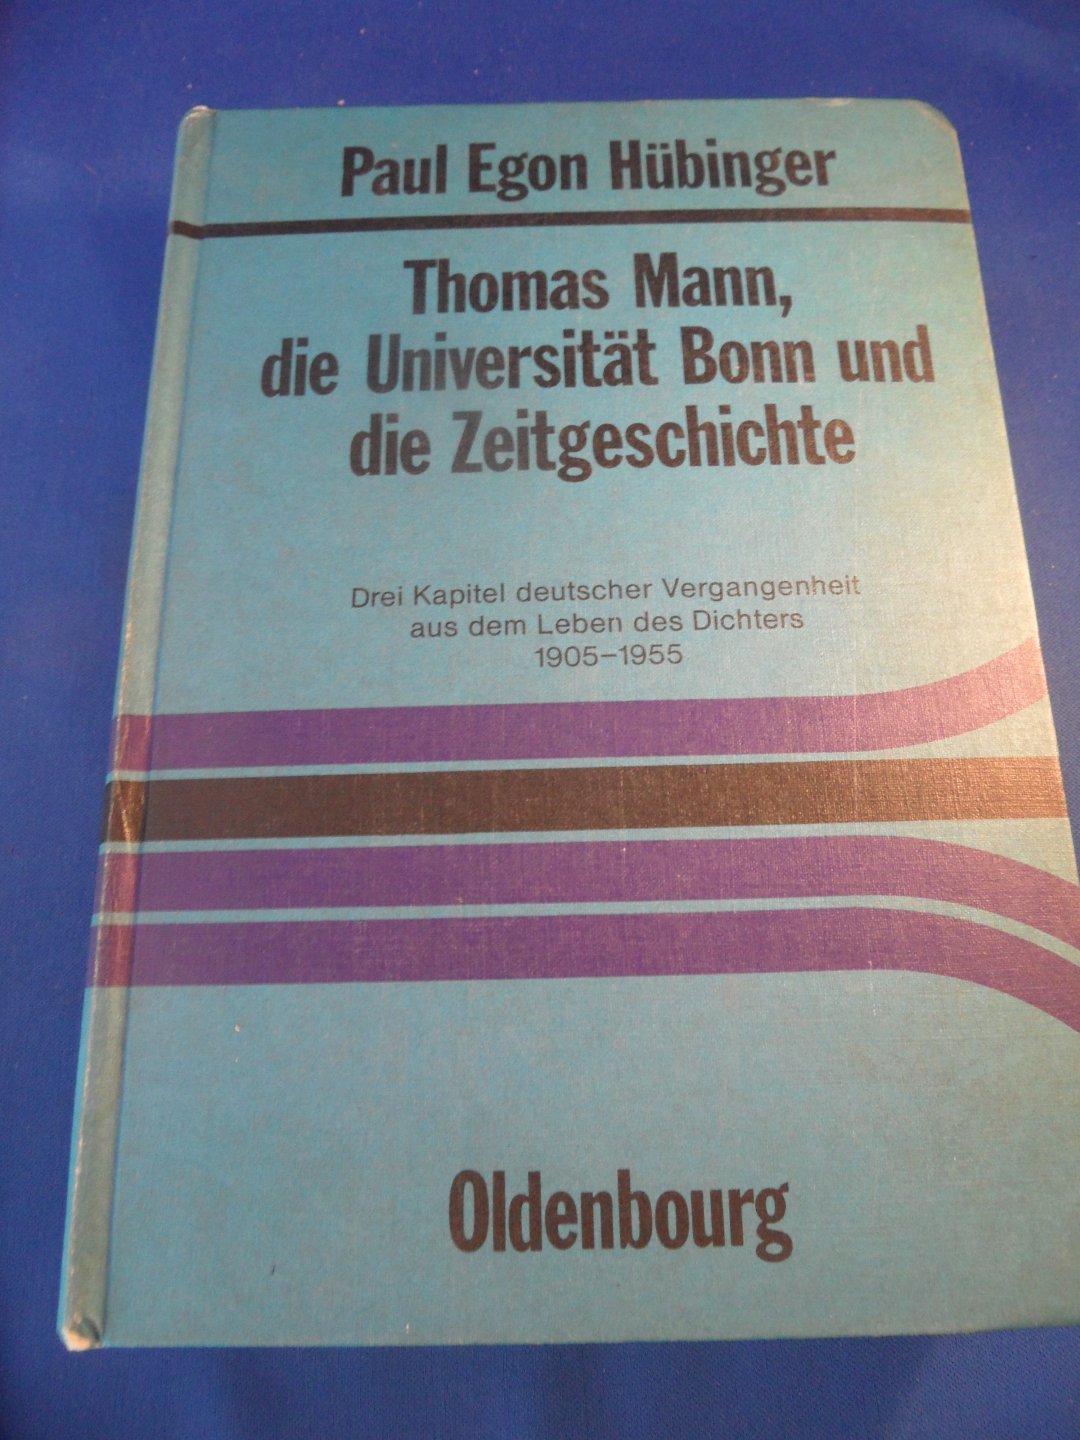 Hübinger, Paul Egon - Thomas Mann, die Universität Bonn und die Zeitgeschichte